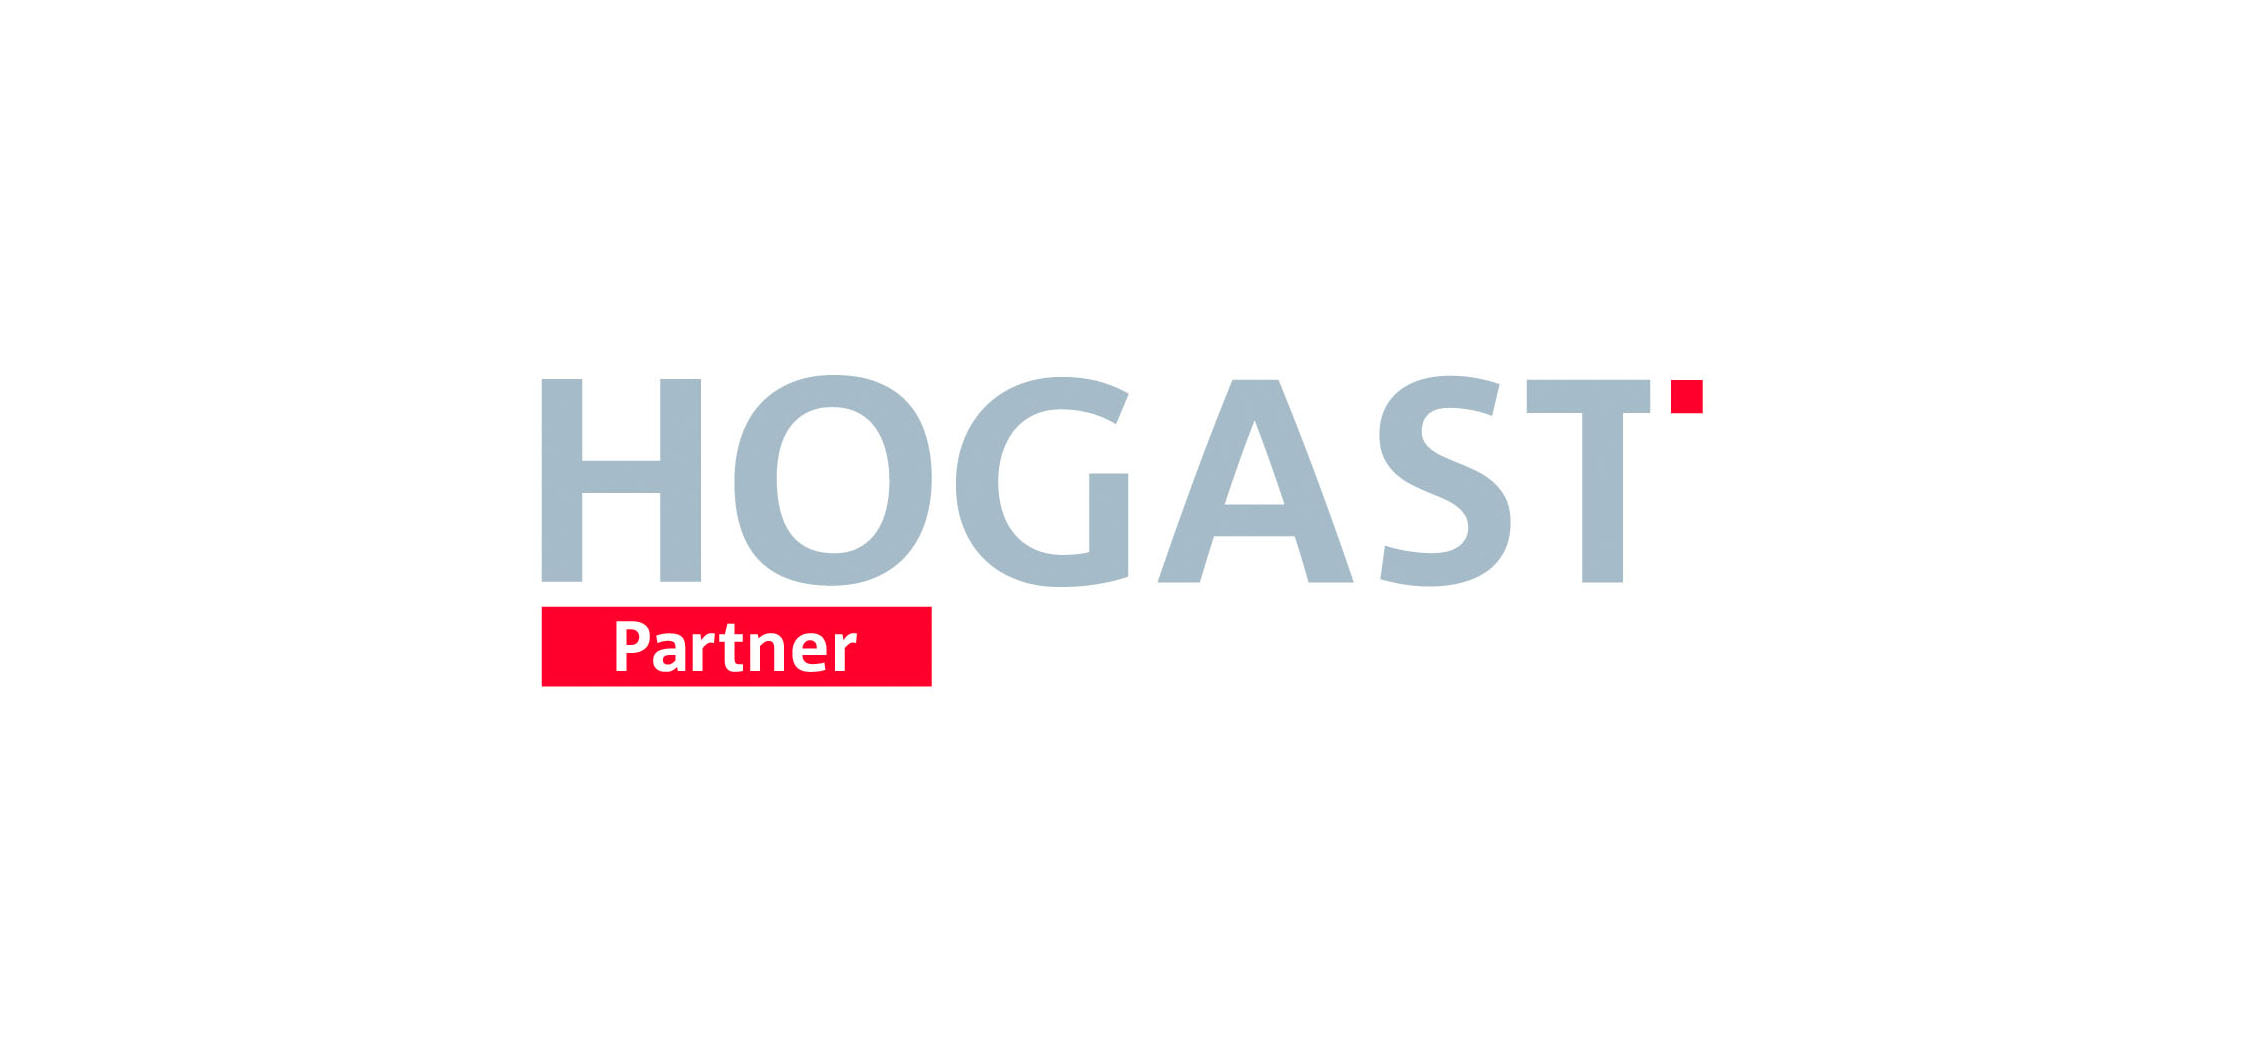 hogast partner_website